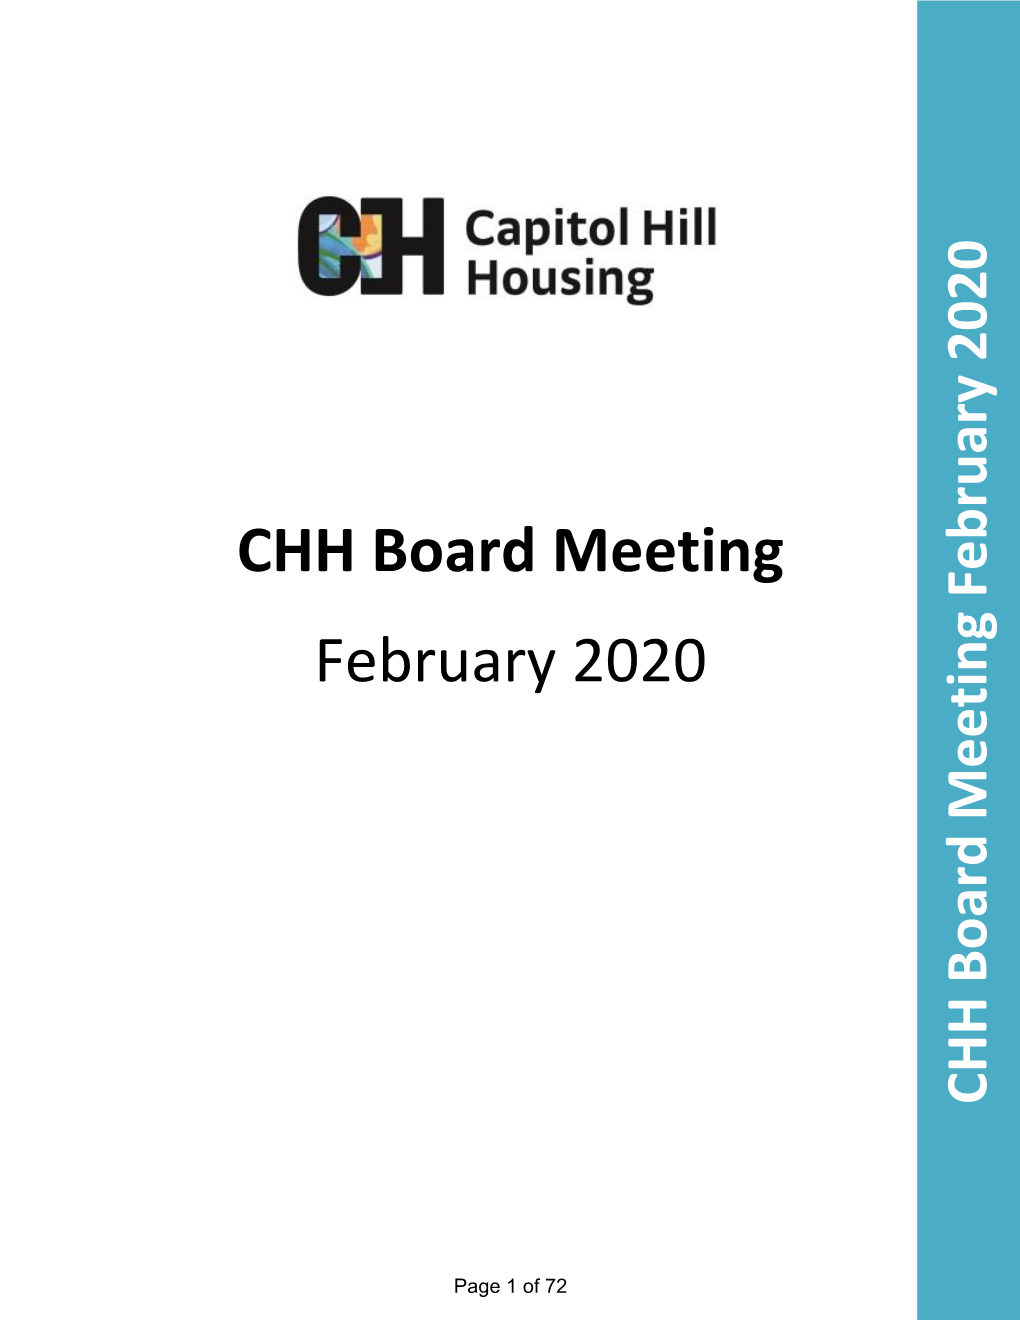 CHH Board Meeting February 2020